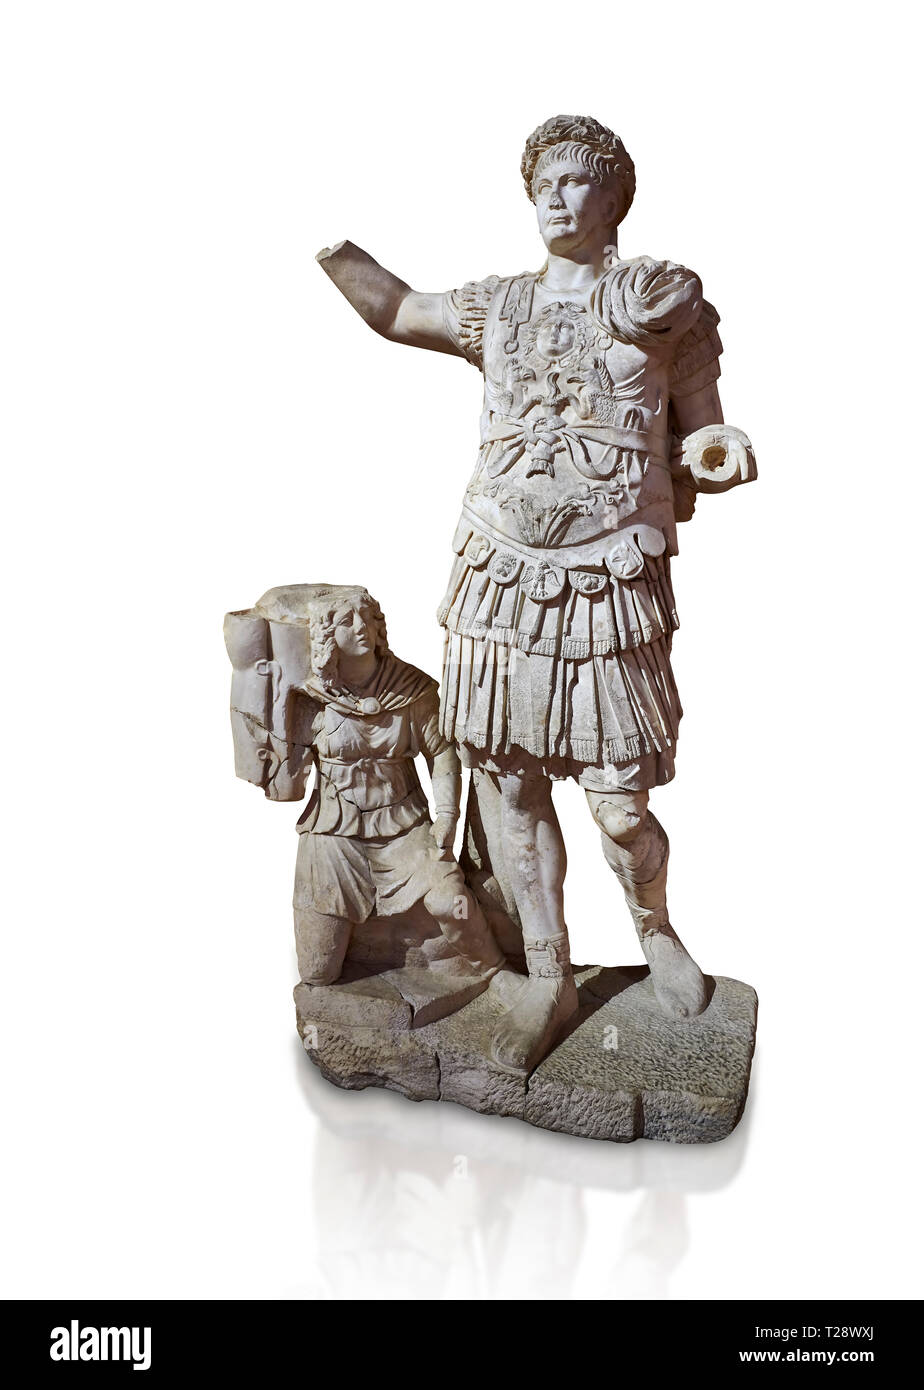 Römische Statue von Kaiser Trajan. Marmor. Perge. 2. Inv.-Nr. 11.13 .79. Das Archäologische Museum von Antalya; Türkei. Vor einem weißen Hintergrund. Stockfoto